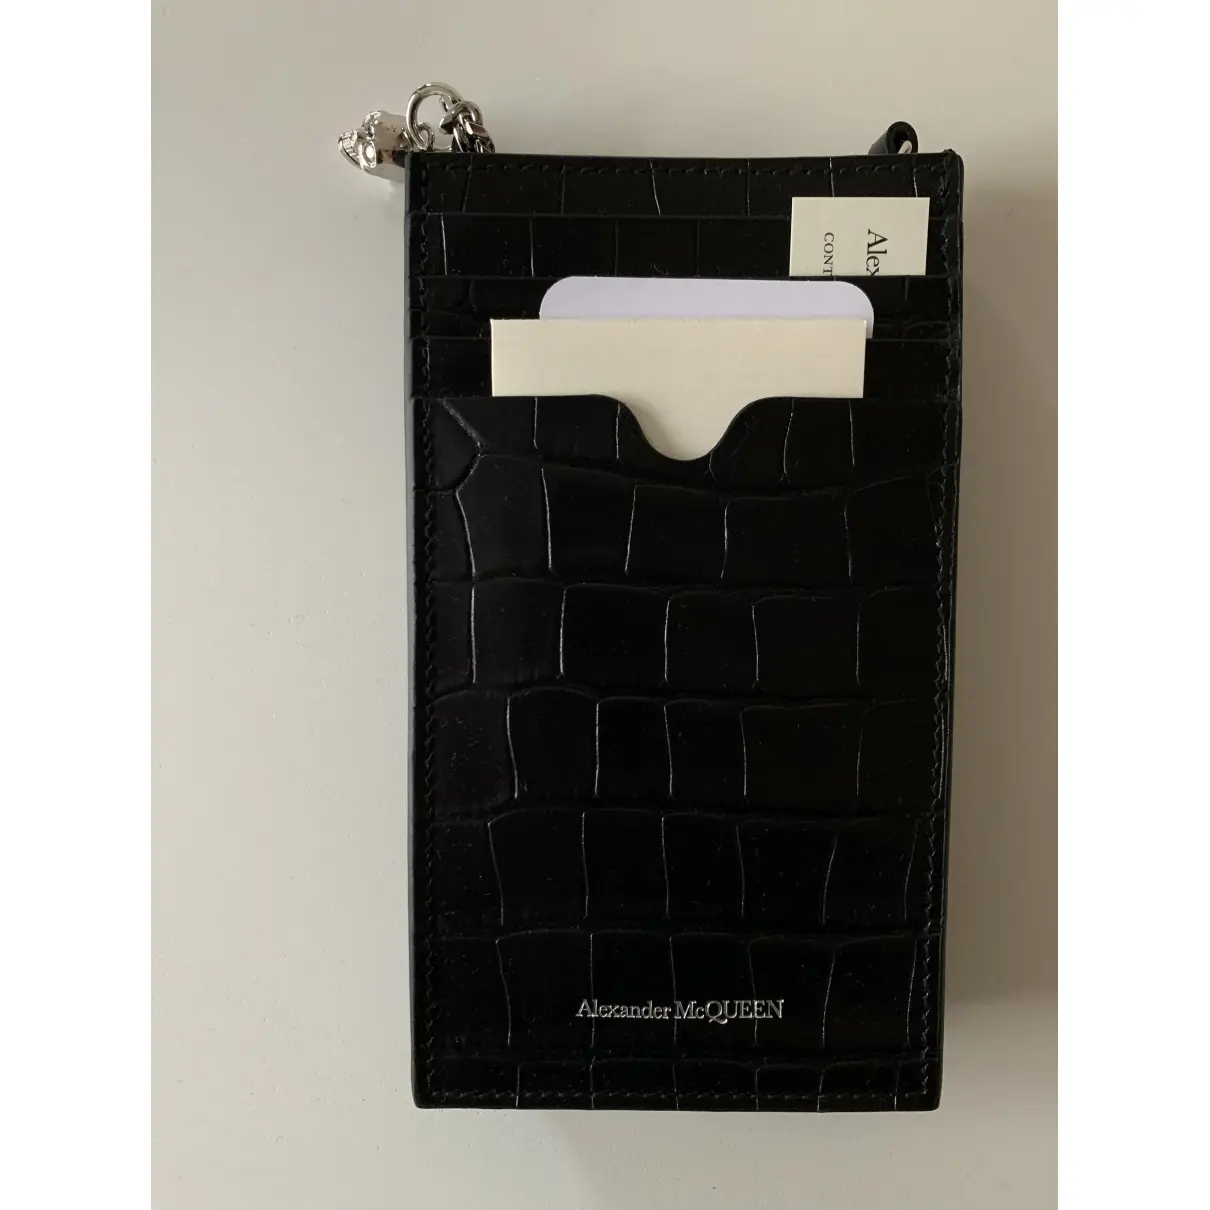 Buy Alexander McQueen Leather iphone case online